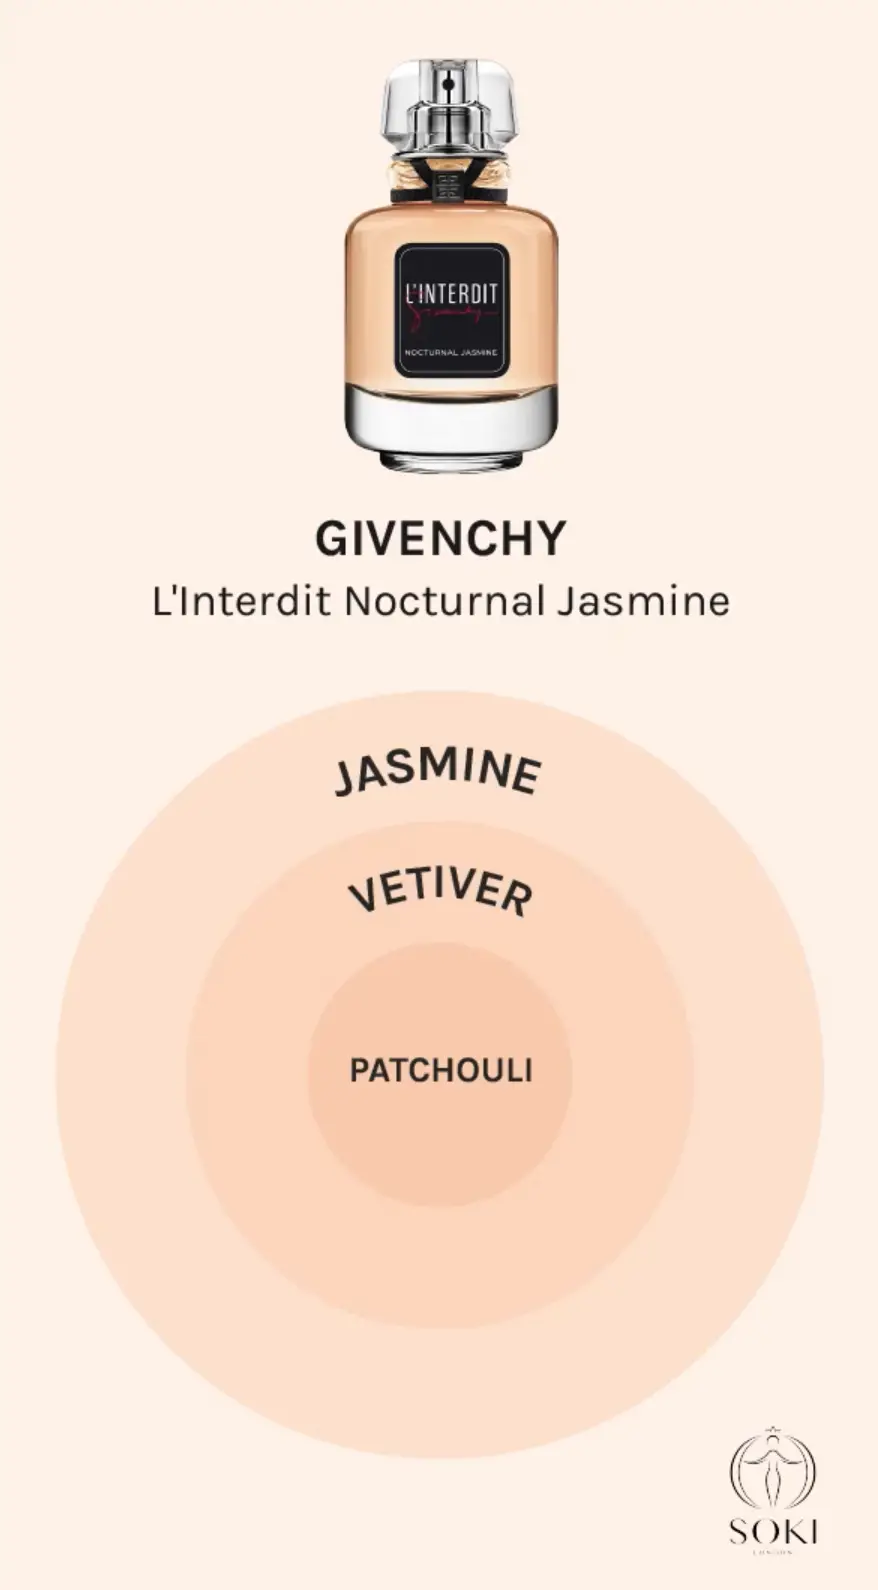 Notas del perfume L'interdit Nocturnal Jasmine de Givenchy